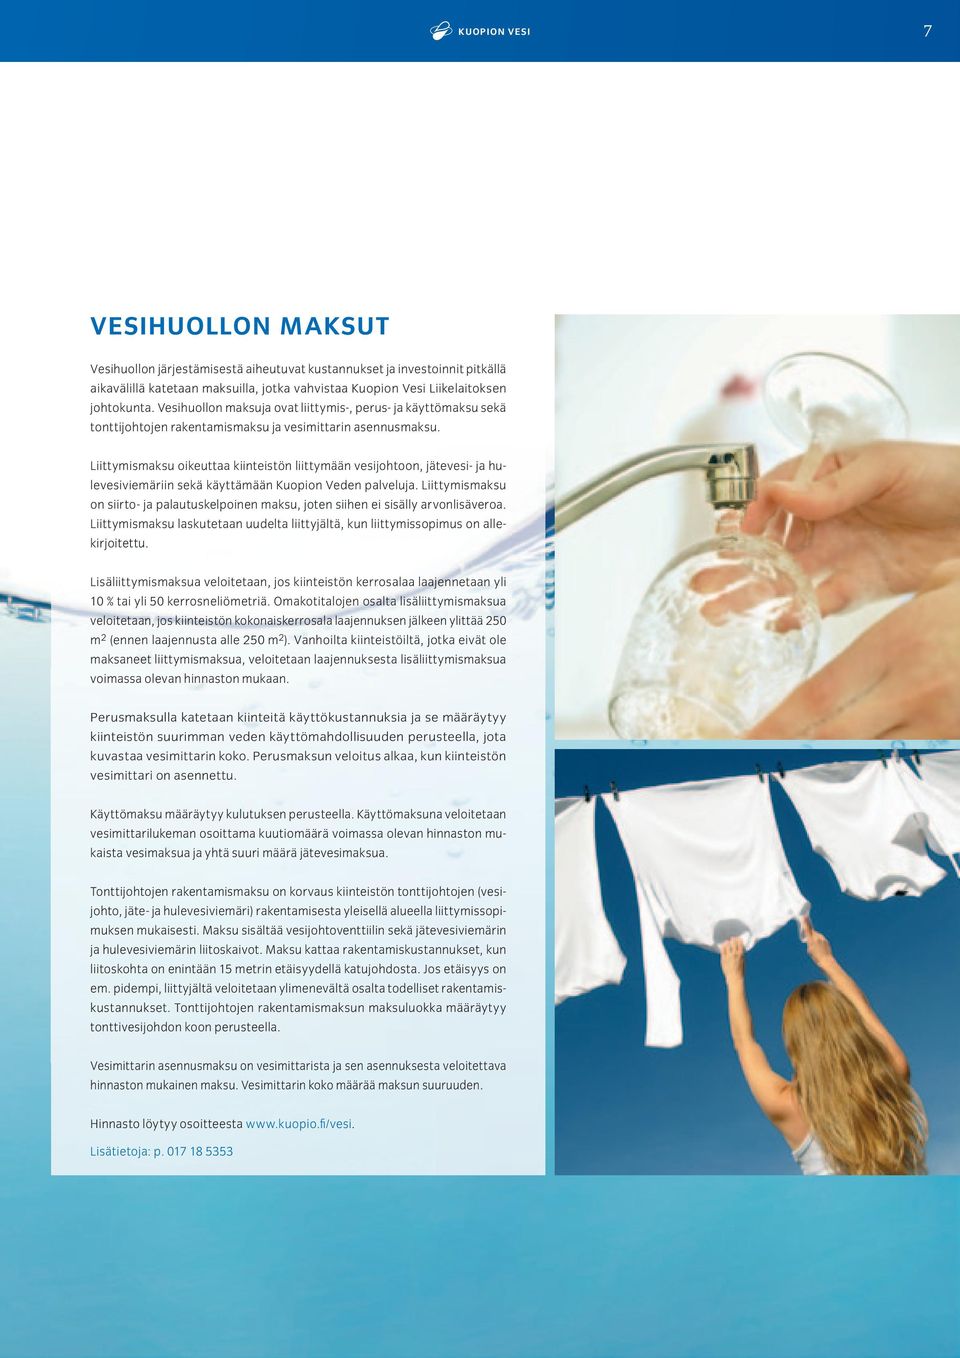 Liittymismaksu oikeuttaa kiinteistön liittymään vesijohtoon, jätevesi- ja hulevesiviemäriin sekä käyttämään Kuopion Veden palveluja.